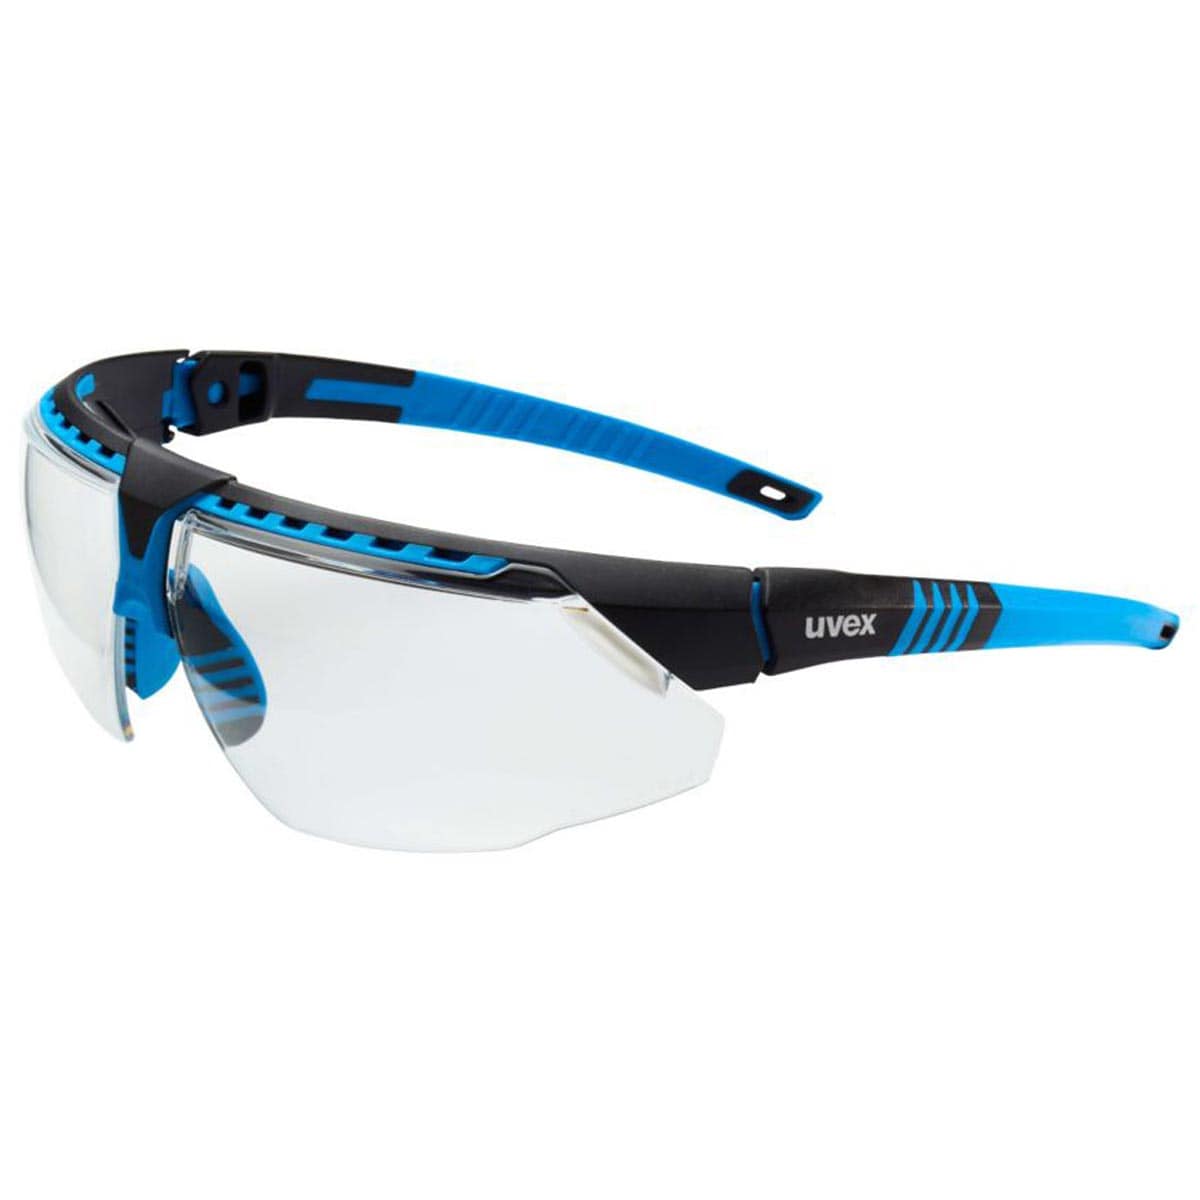 Honeywell Uvex Avatar Safety Glasses